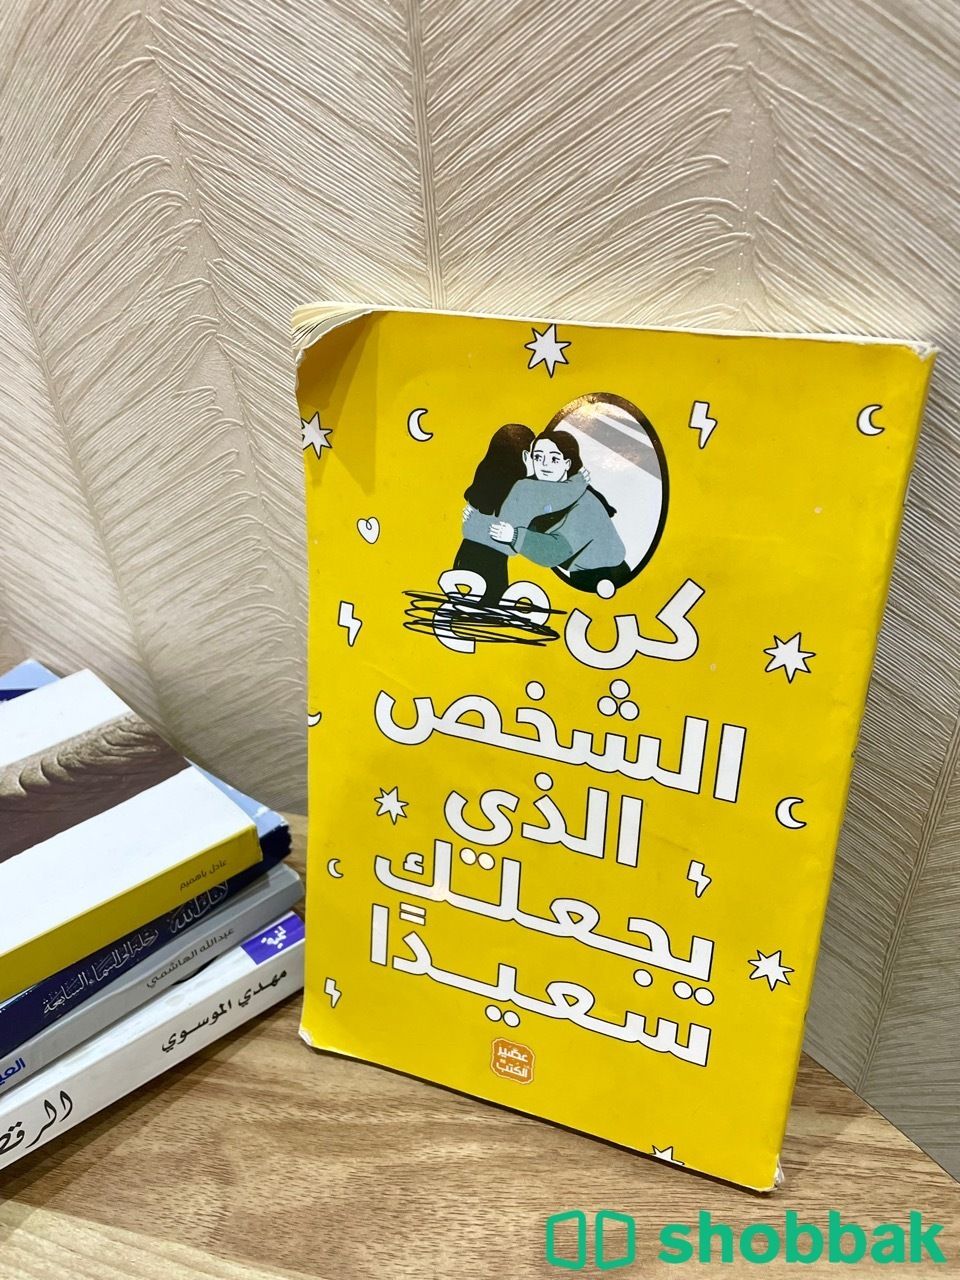 كتاب: كن مع الشخص الذي يجعلك سعيدًا Shobbak Saudi Arabia